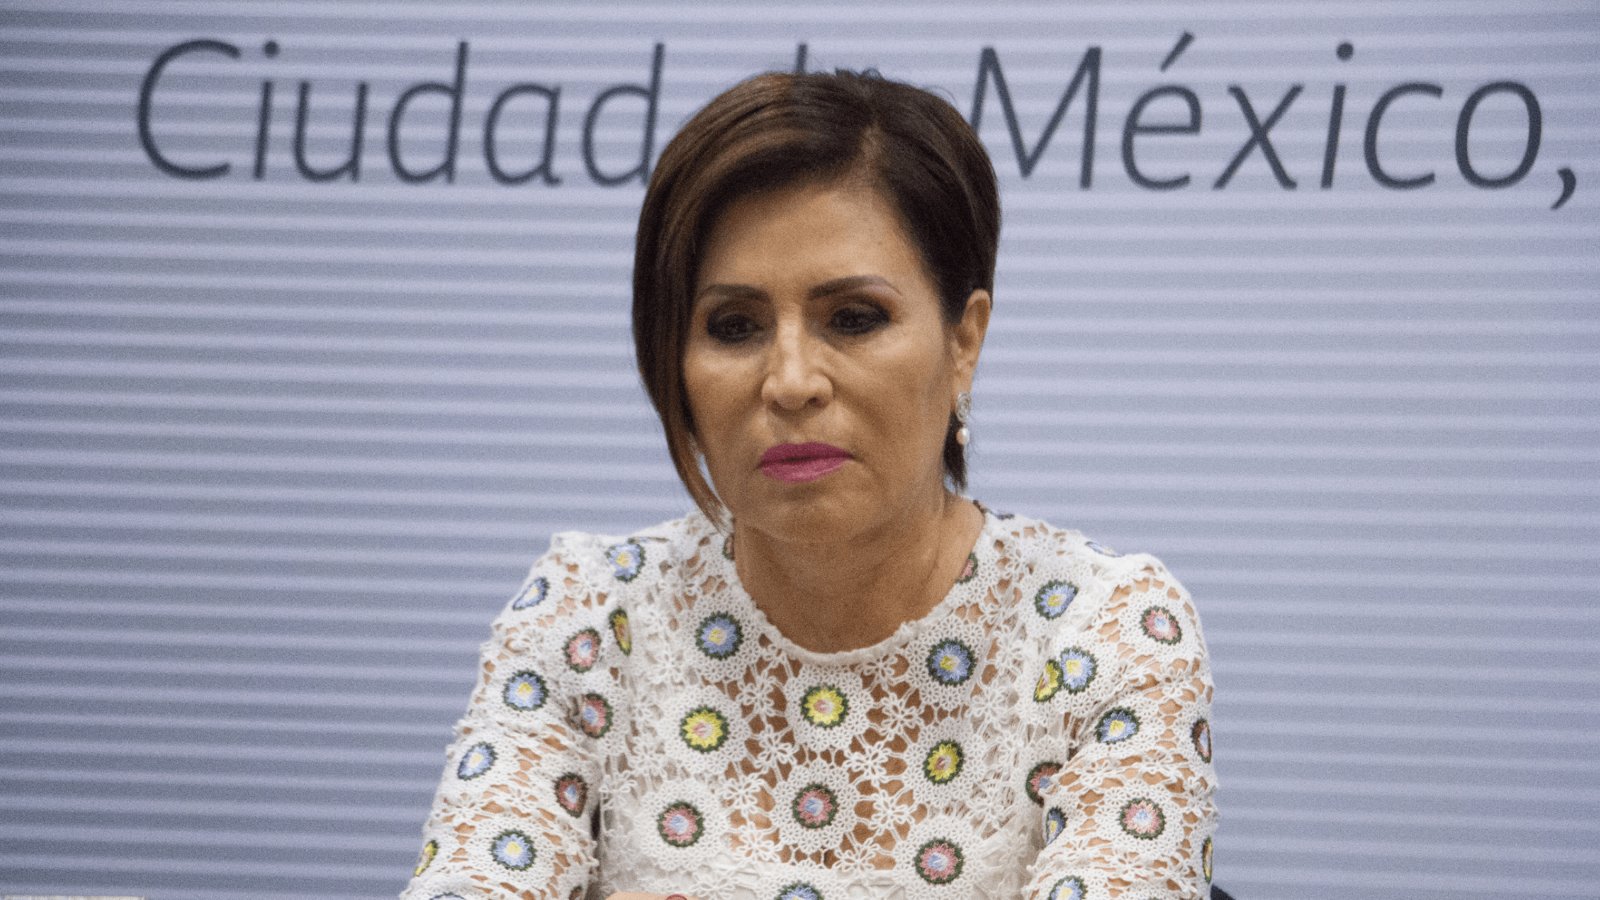 Juez confirma prisión contra exministra mexicana acusada por corrupción